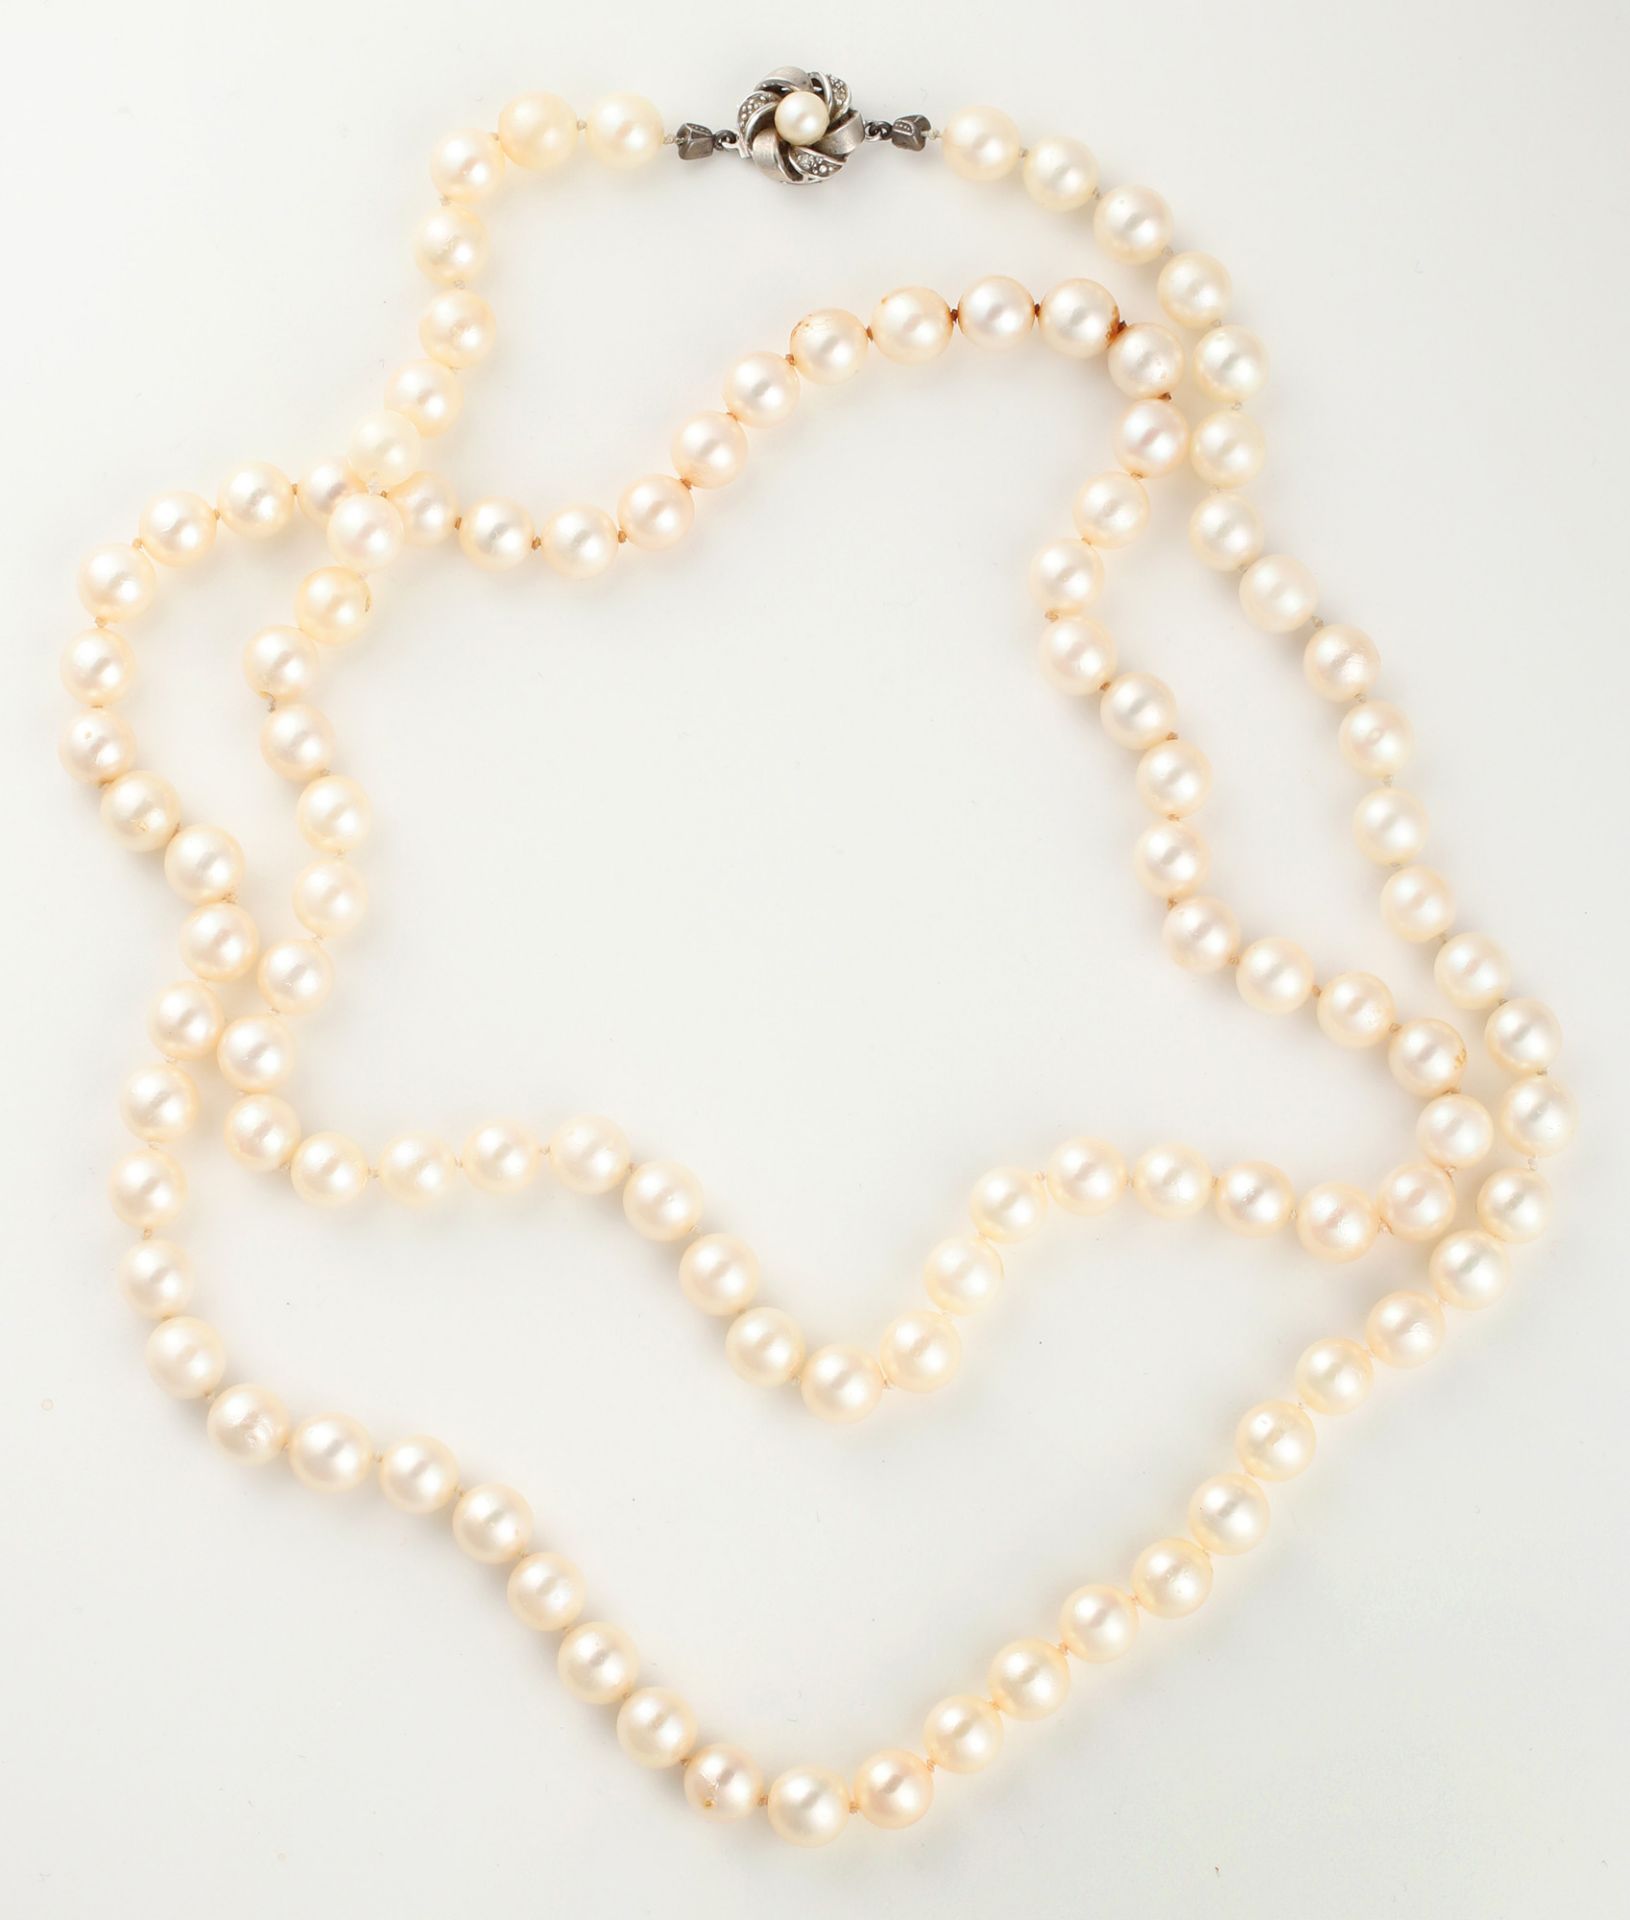 Zuchtperlcollier, aus 104 Perlen